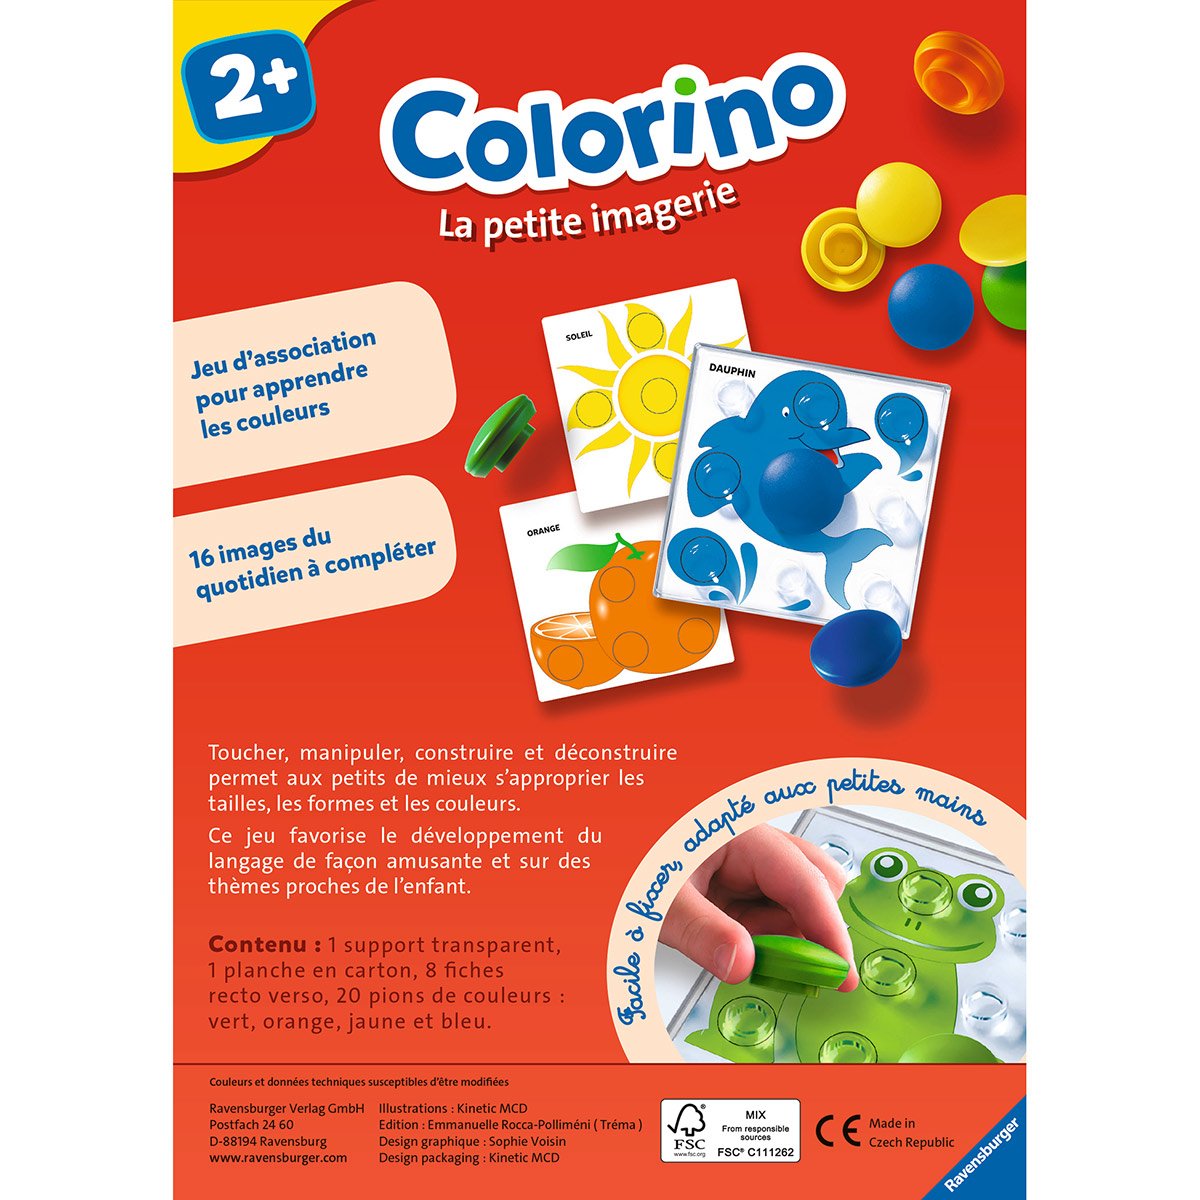 COLORINO - Mon 1° jeu des couleurs - Ravensburger - Dès 2 ans